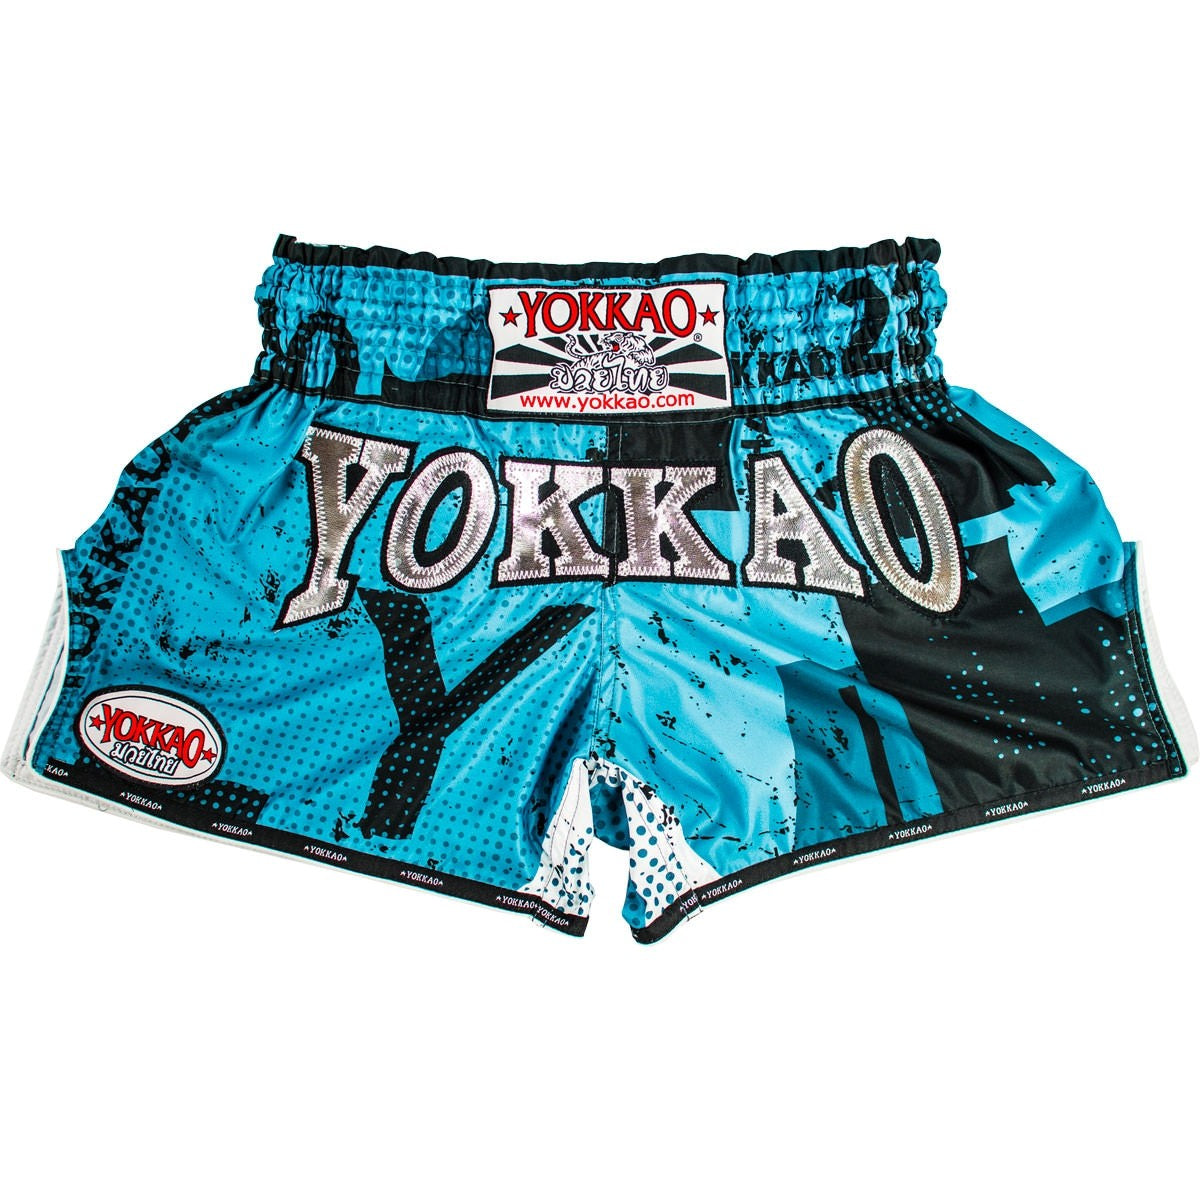 Muay Thai Shorts - Blue Urban - Yokkao – Muay Thai Planet USA